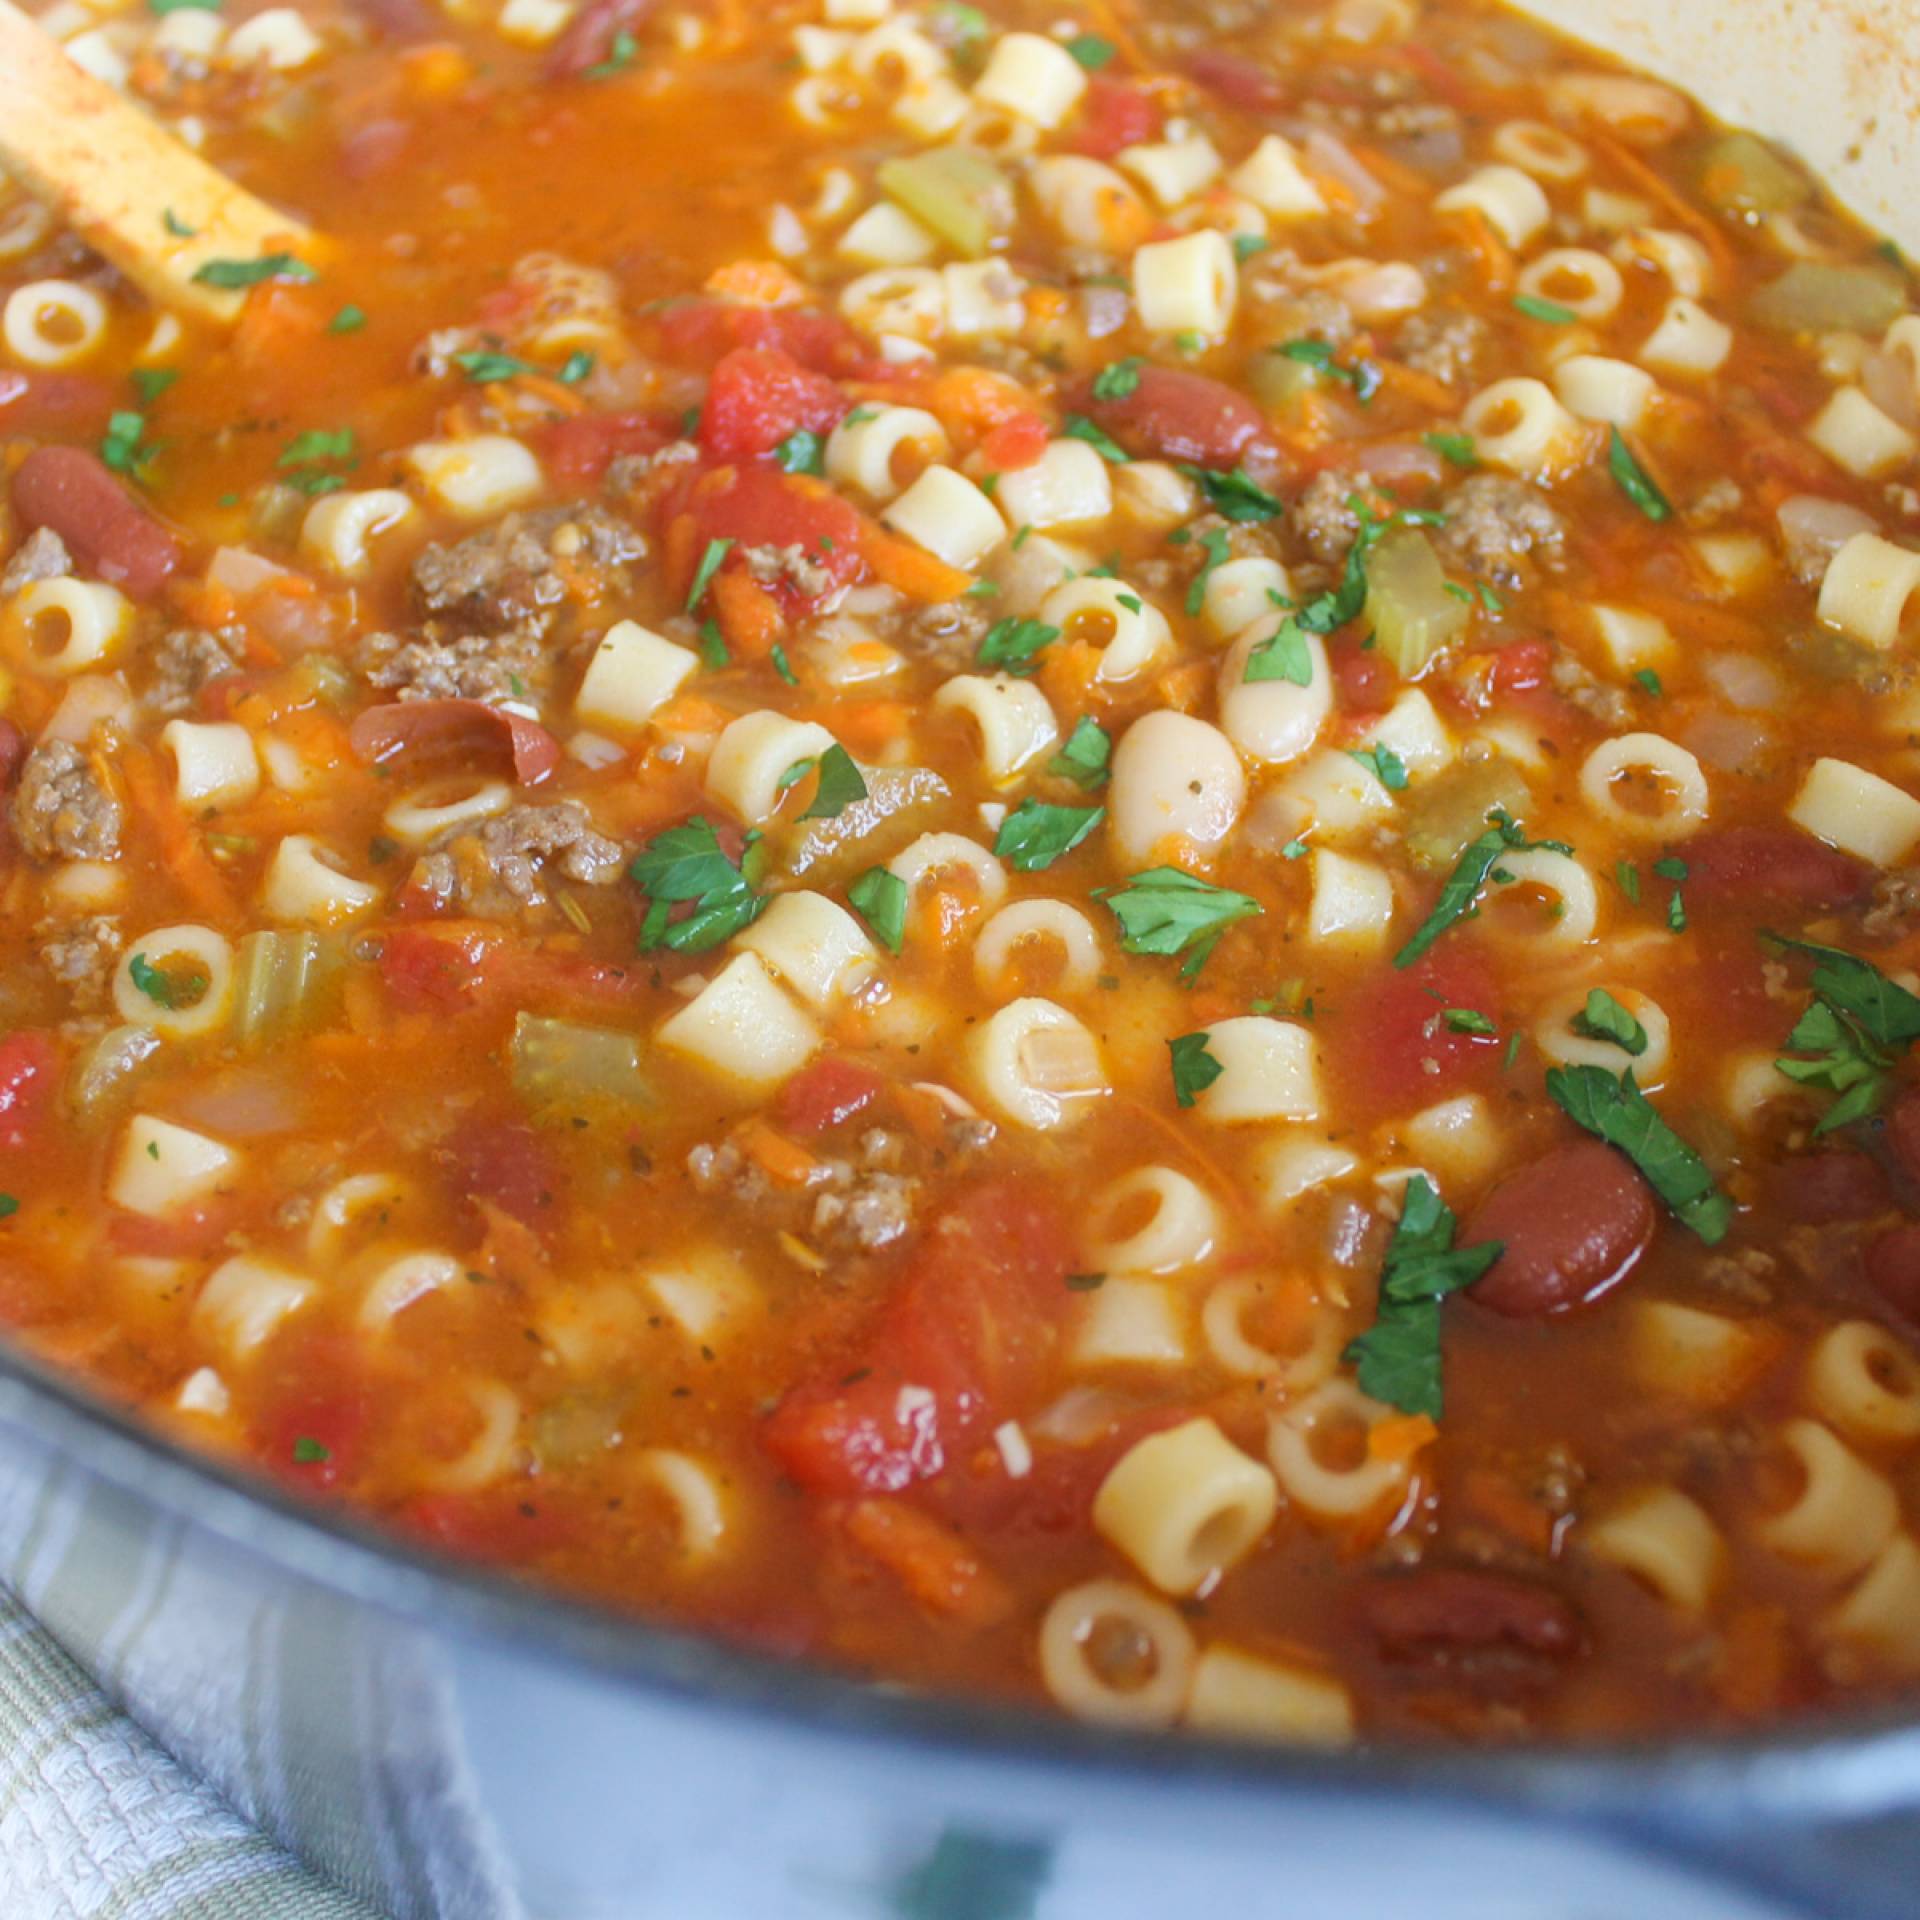 16 oz Pasta Fagioli Soup